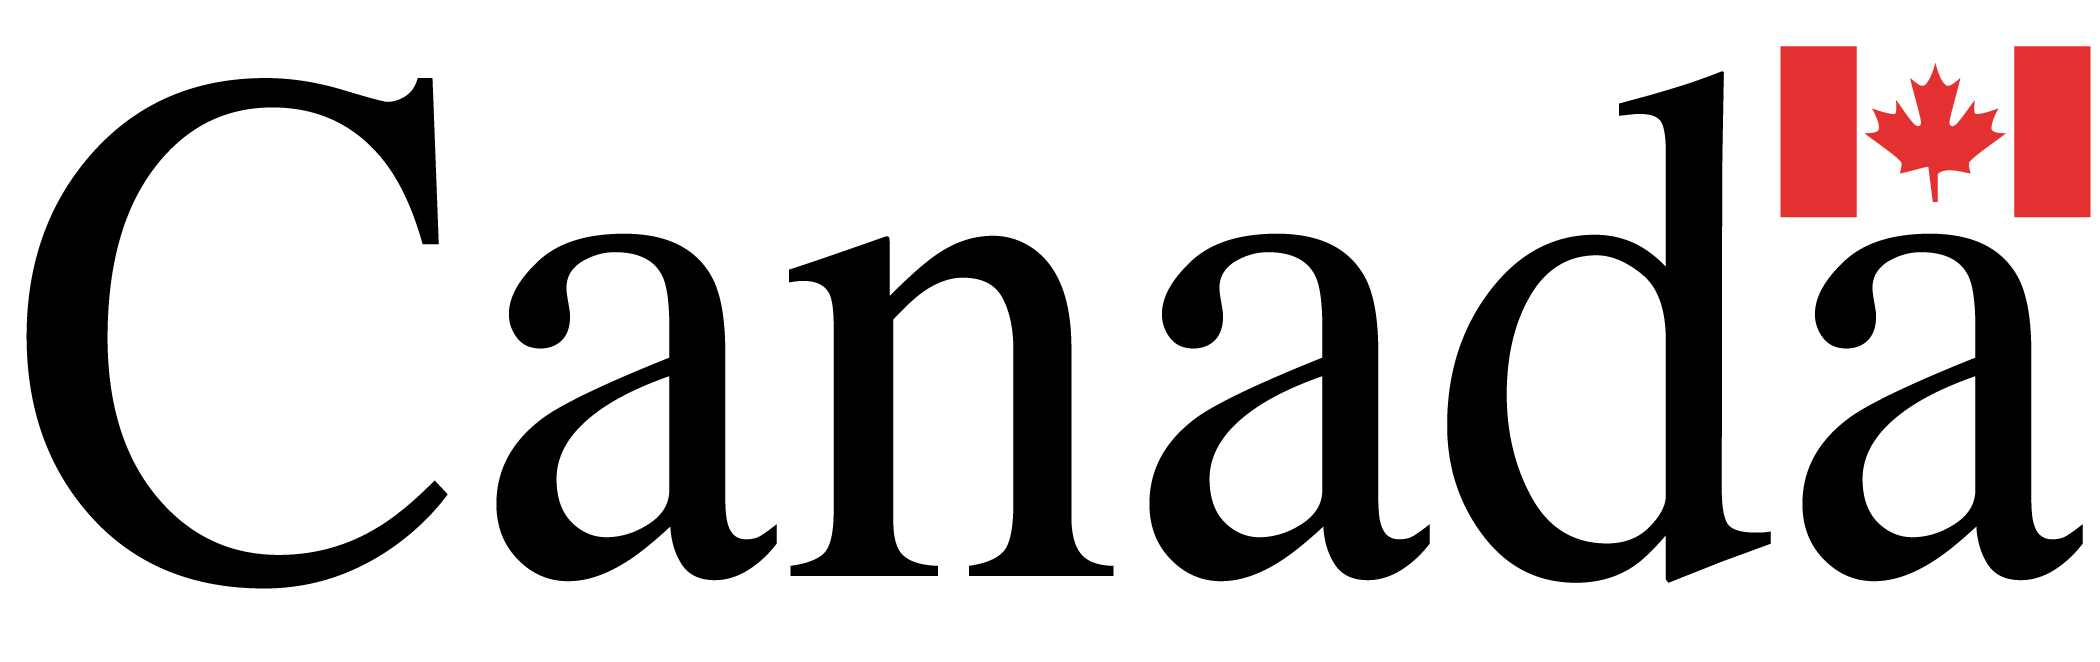 Canada Logo.jpg